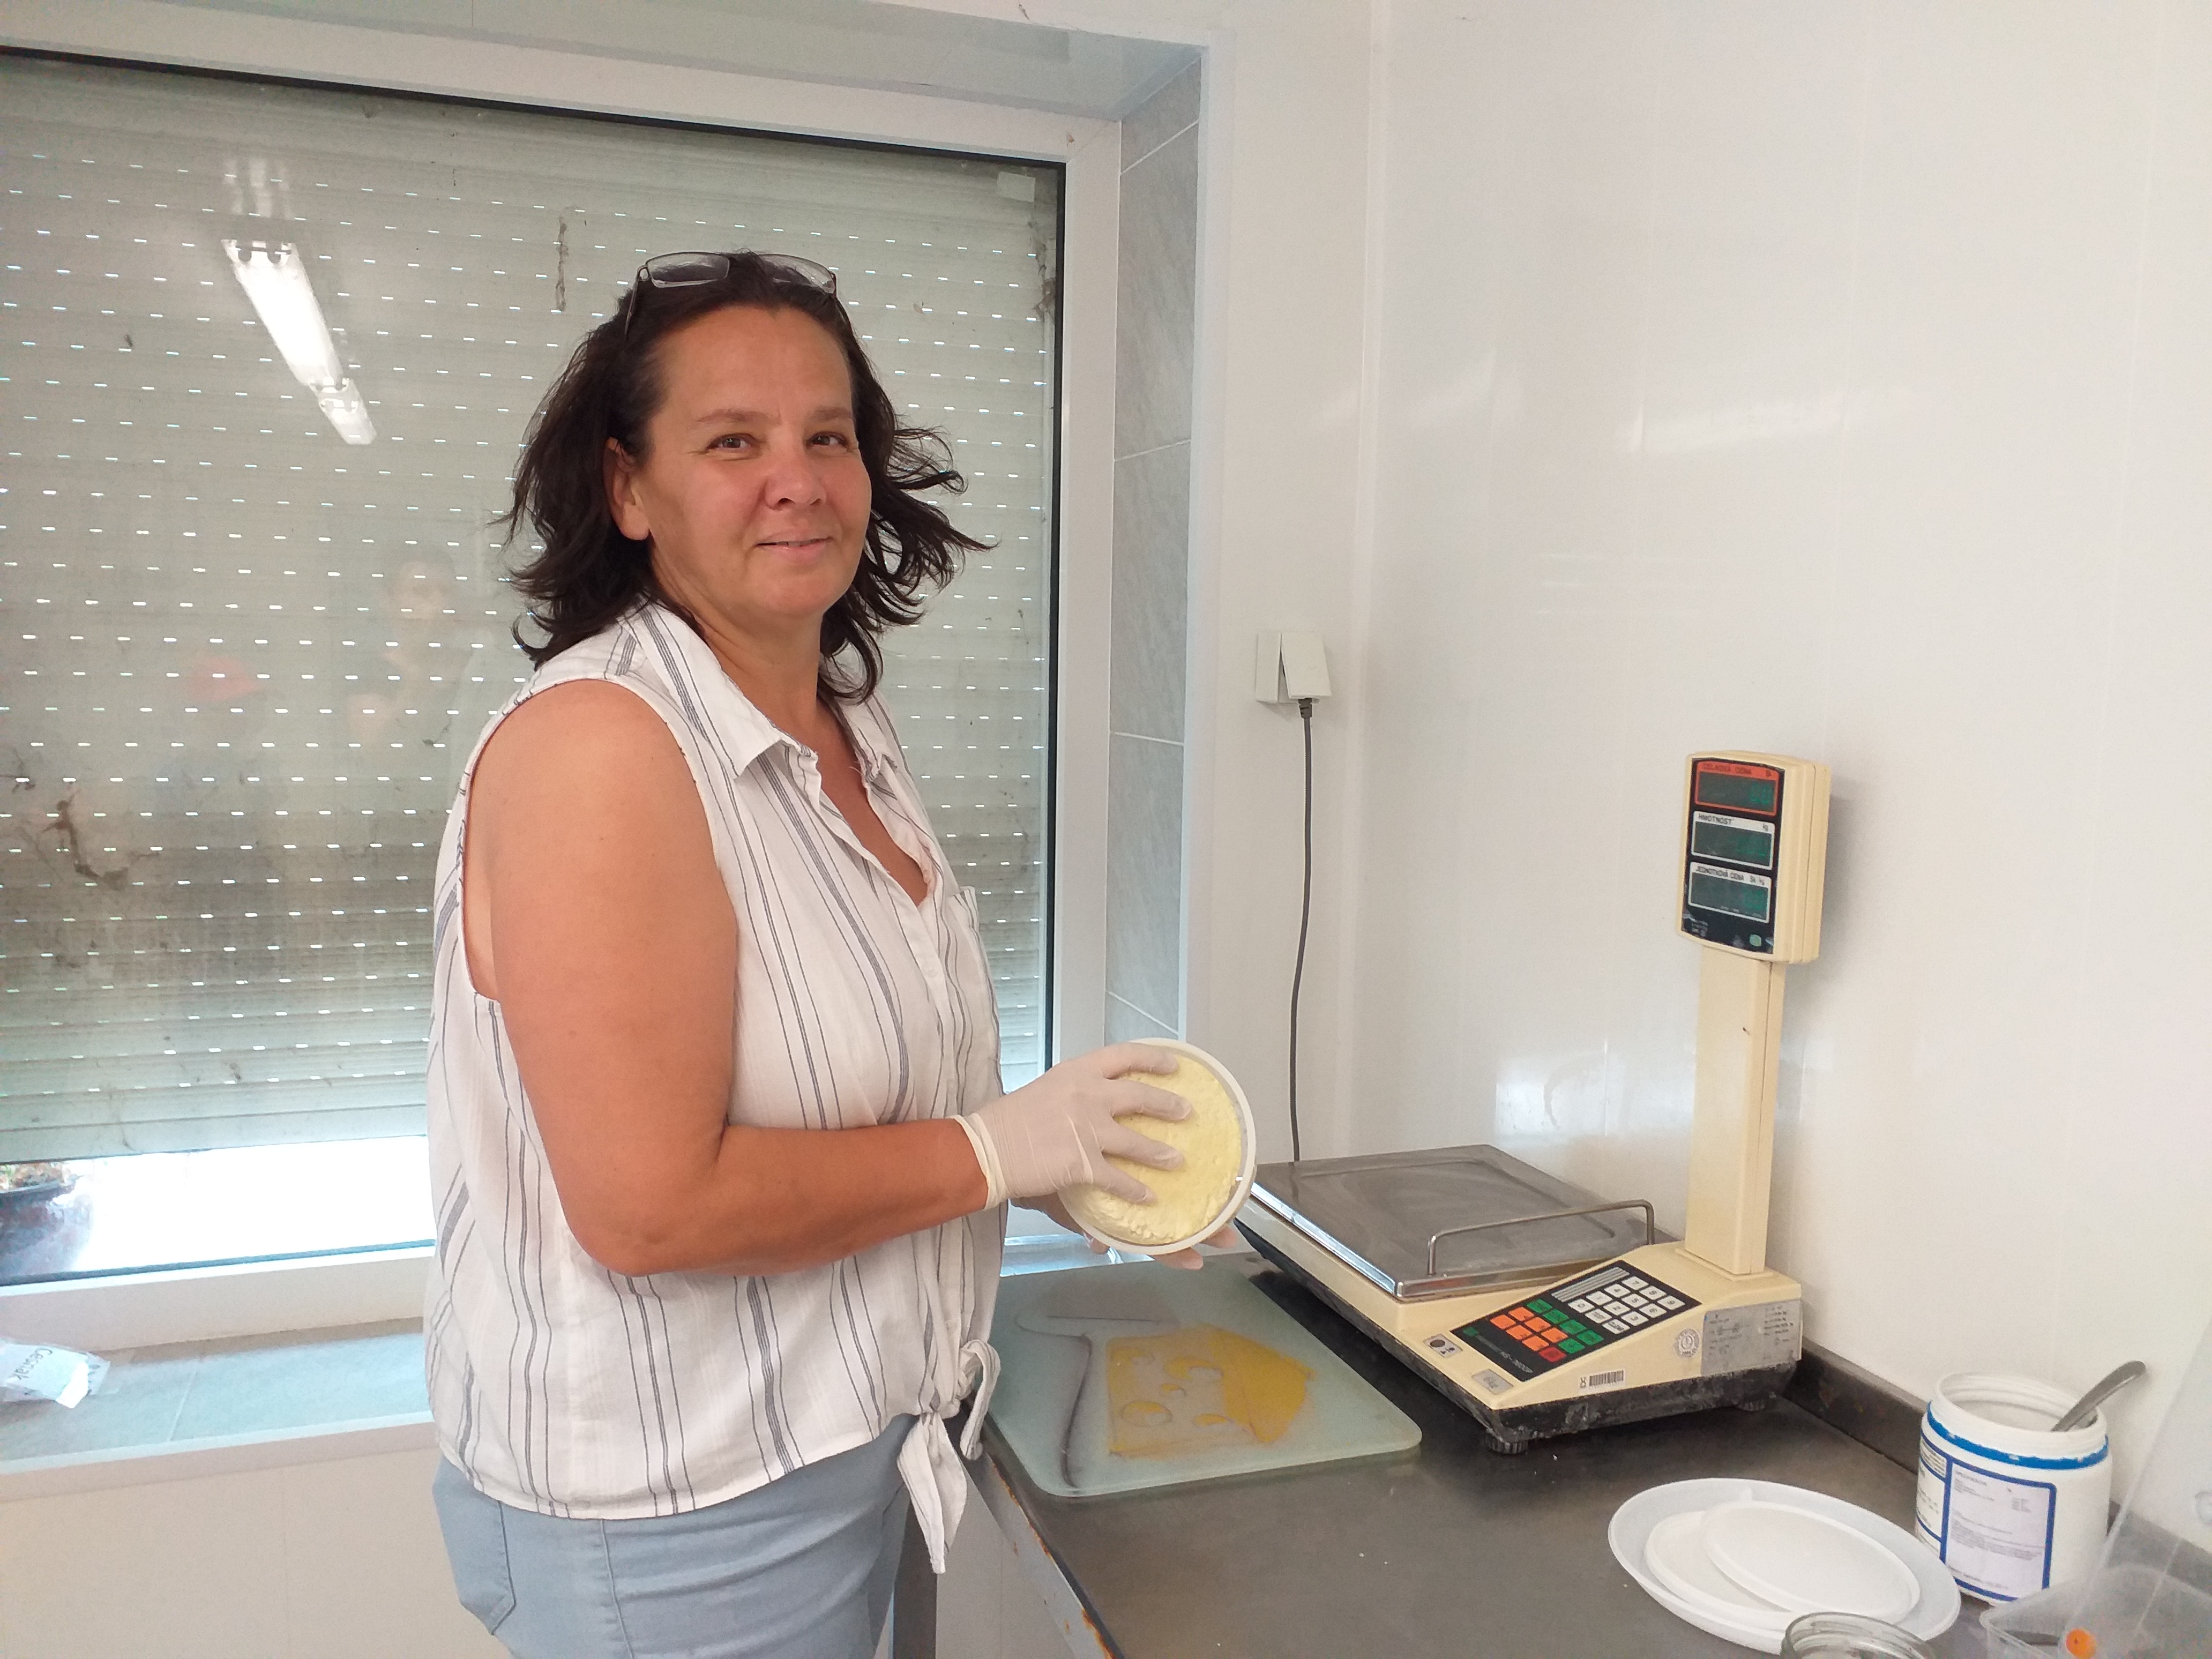 Czadró Katalin a sajtkészítő műhelyben, melyet önerőből alakítottak ki